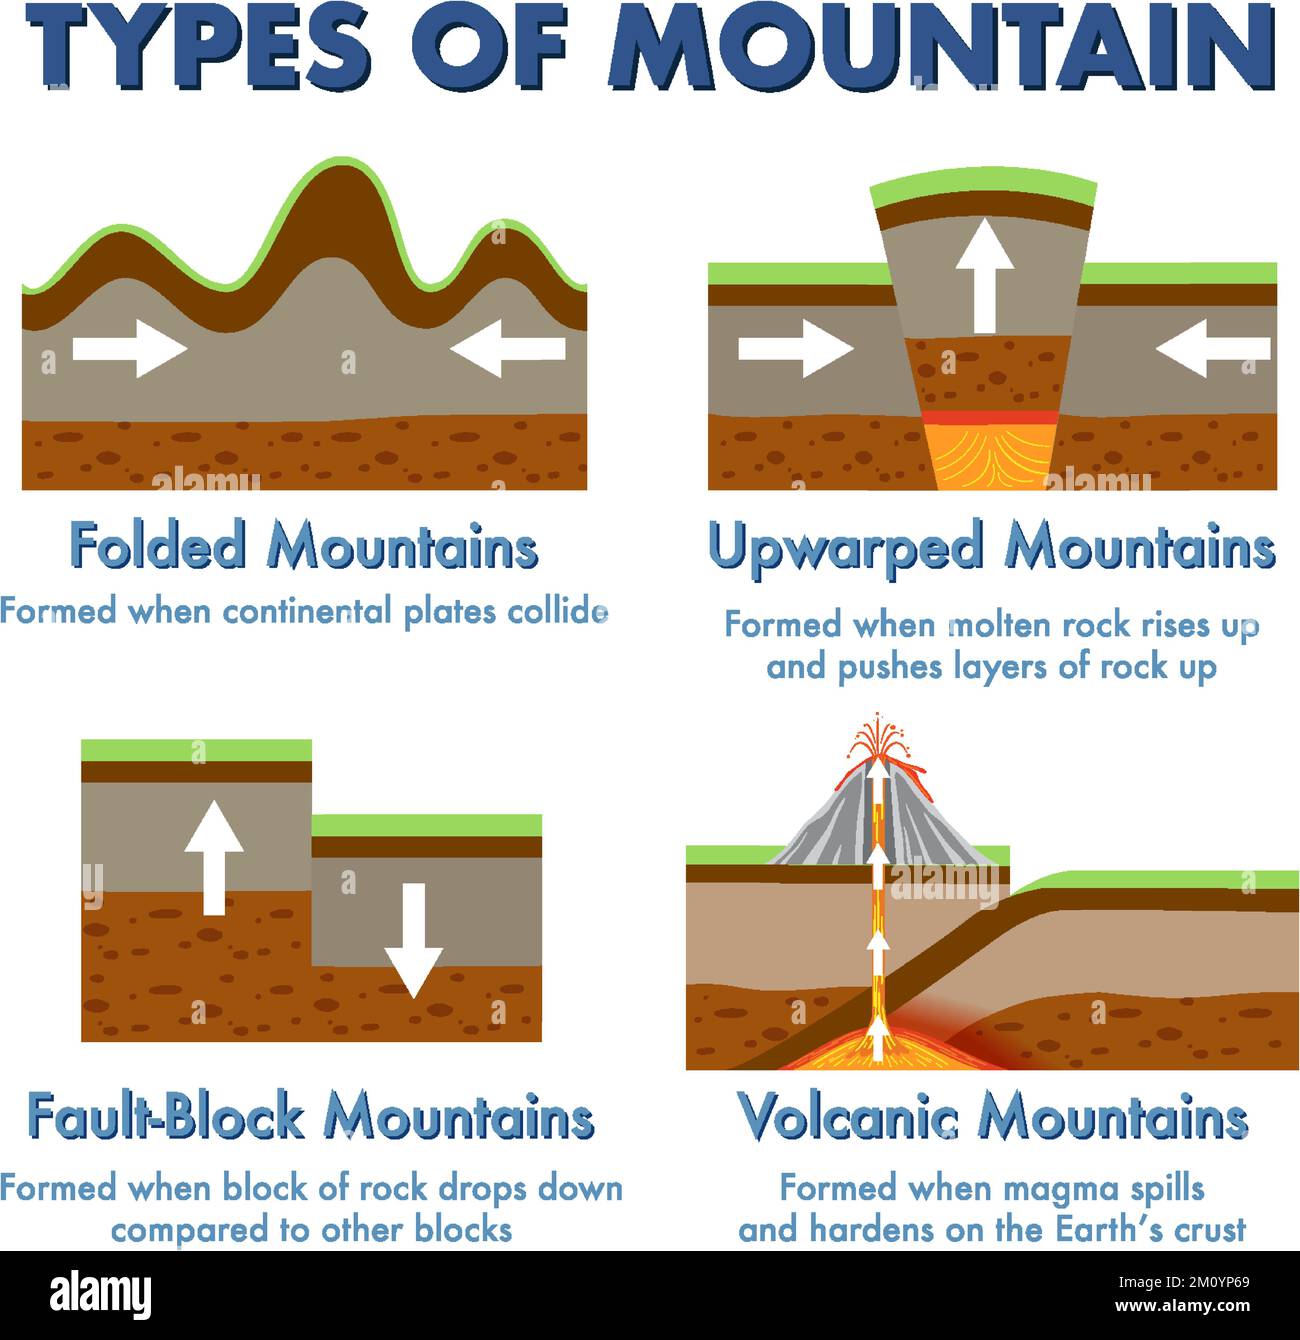 how do upwarped mountains form